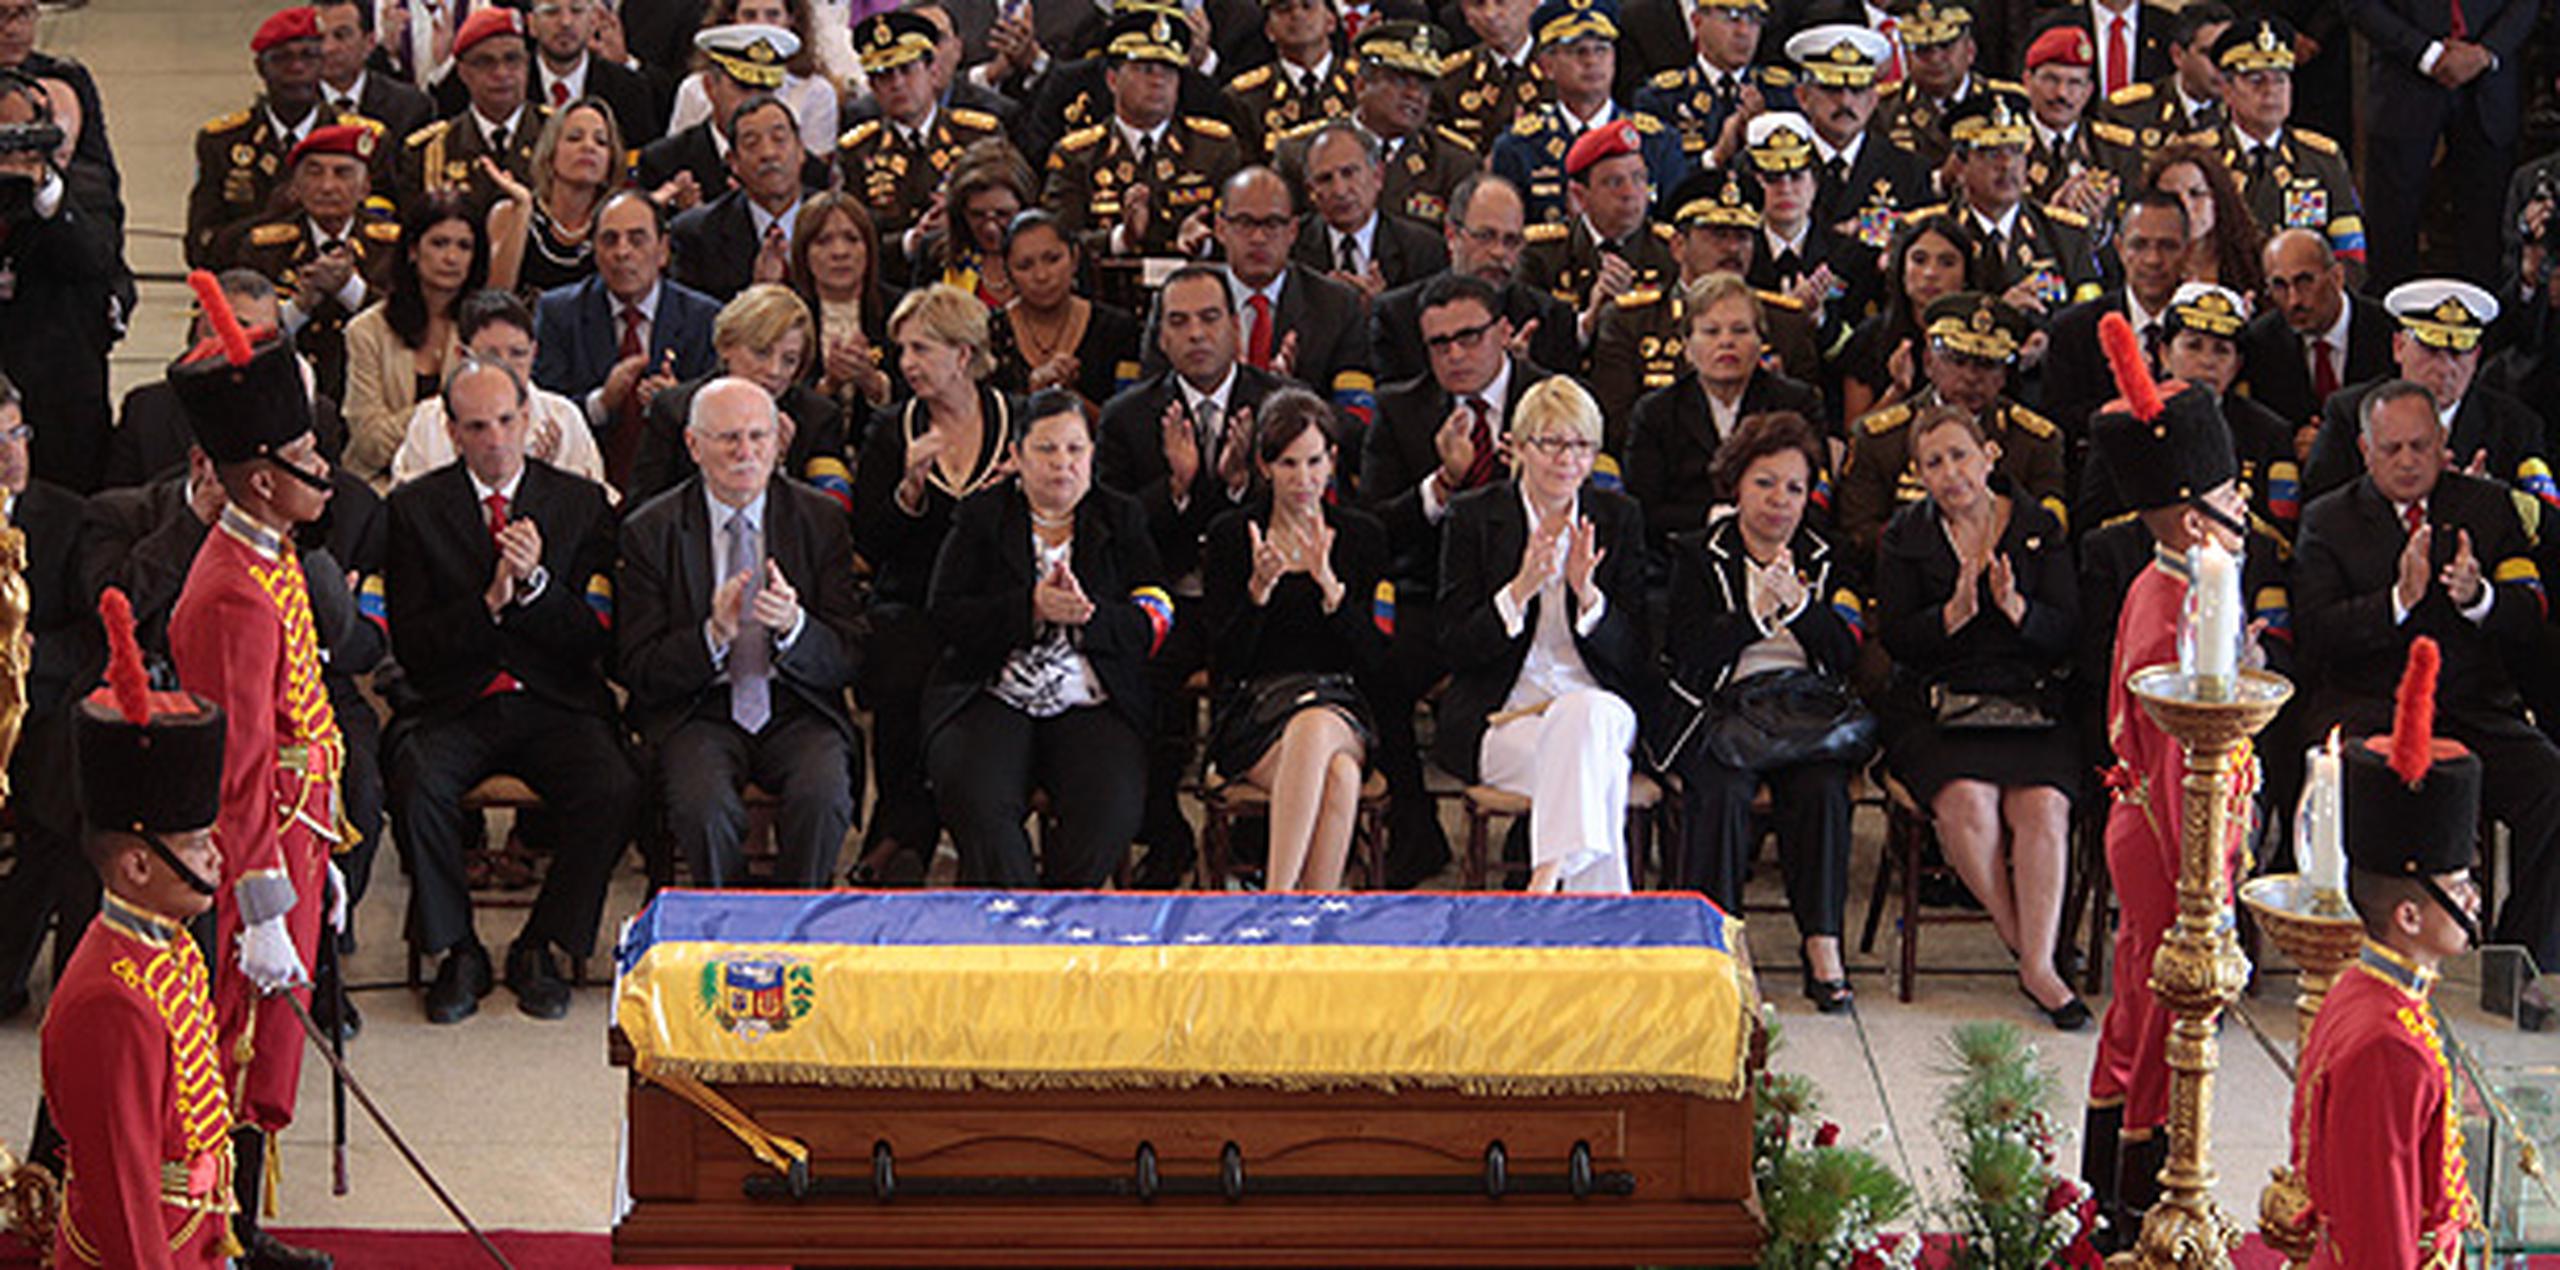 Durante poco más de dos horas se rindió el homenaje a Chávez, cuyo cuerpo yacía dentro de un féretro cubierto por la bandera venezolana. Un coro y una orquesta dieron inicio a la ceremonia entonando el himno nacional. (AP)